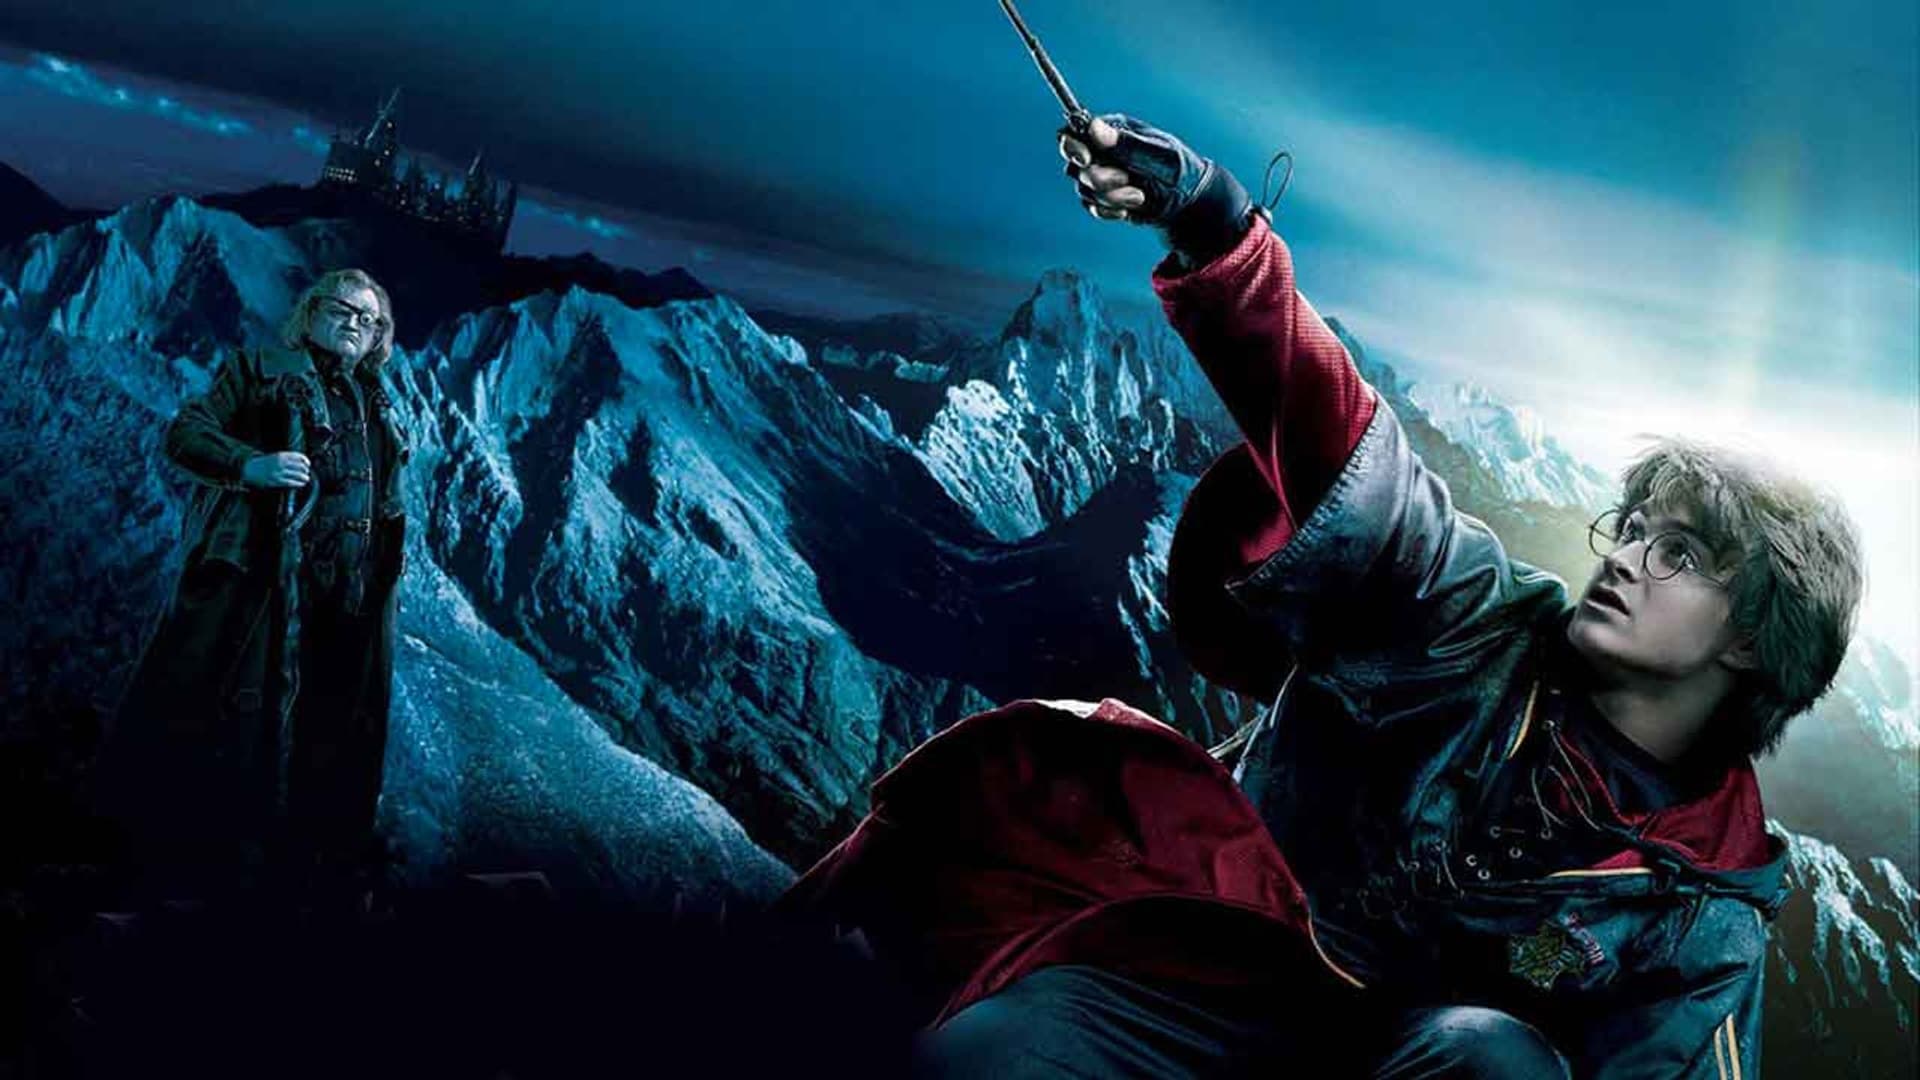 Las mejores películas de Harry Potter y Animales Fantásticos para ver